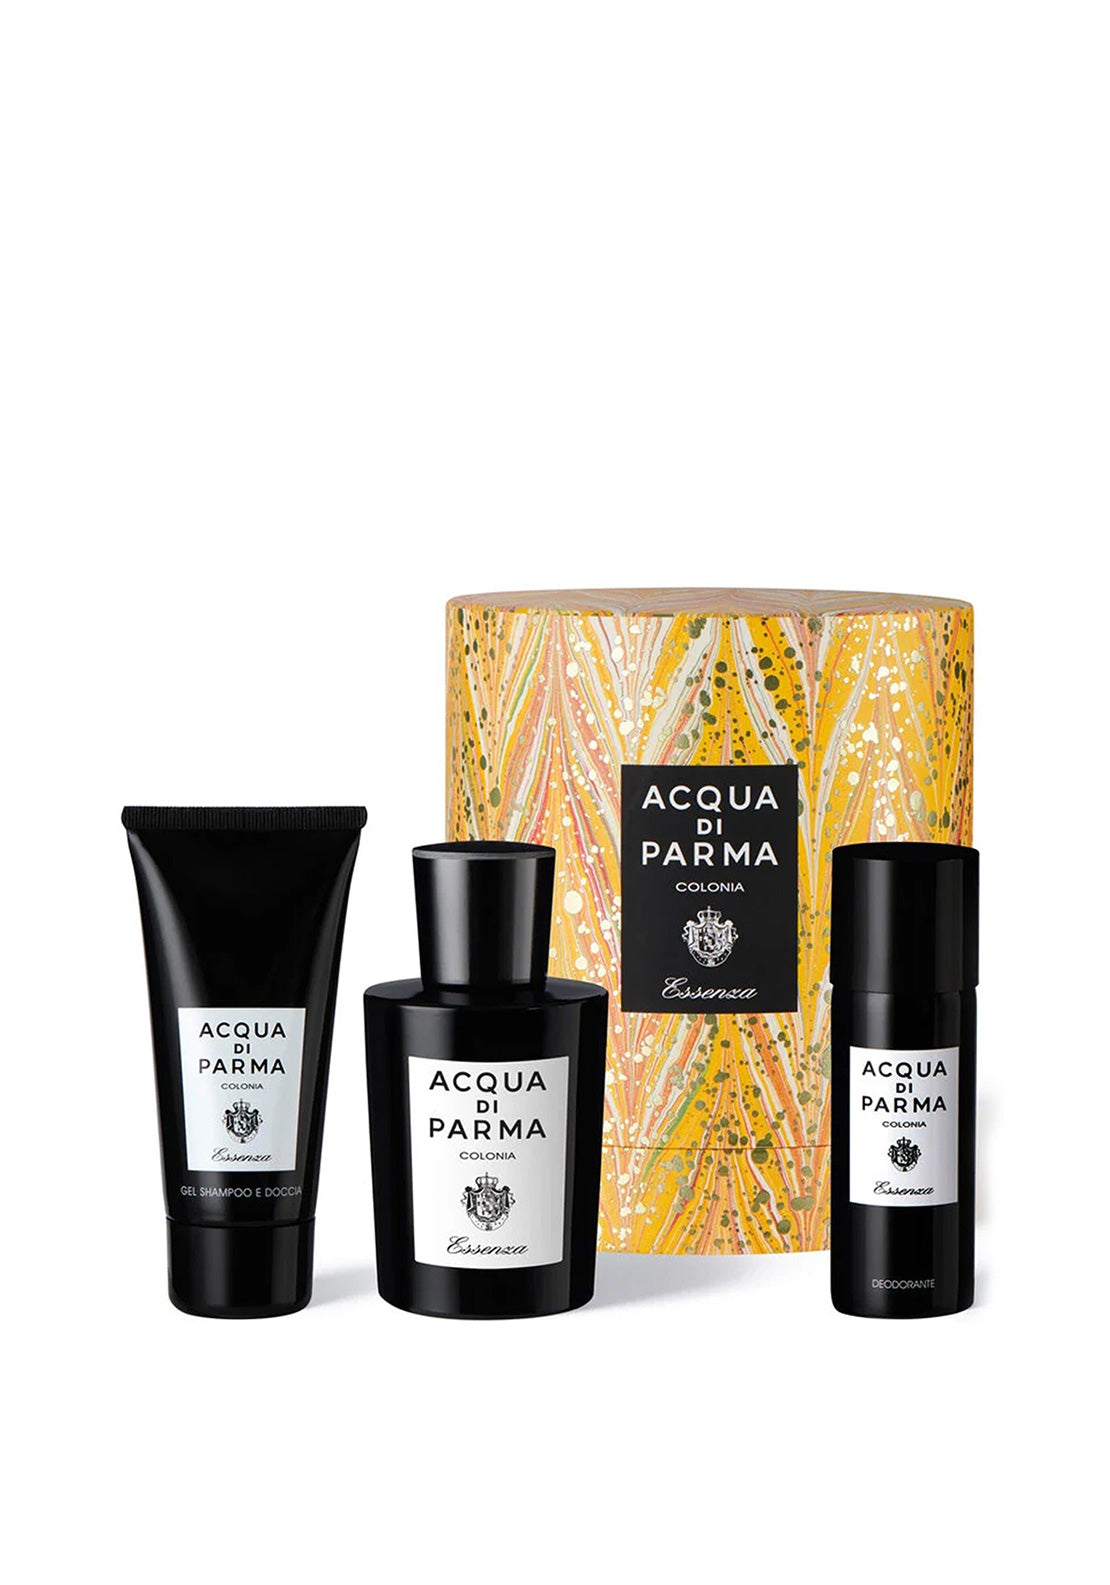 Acqua di Parma presents the Colonia Essenza Travel Spray- a